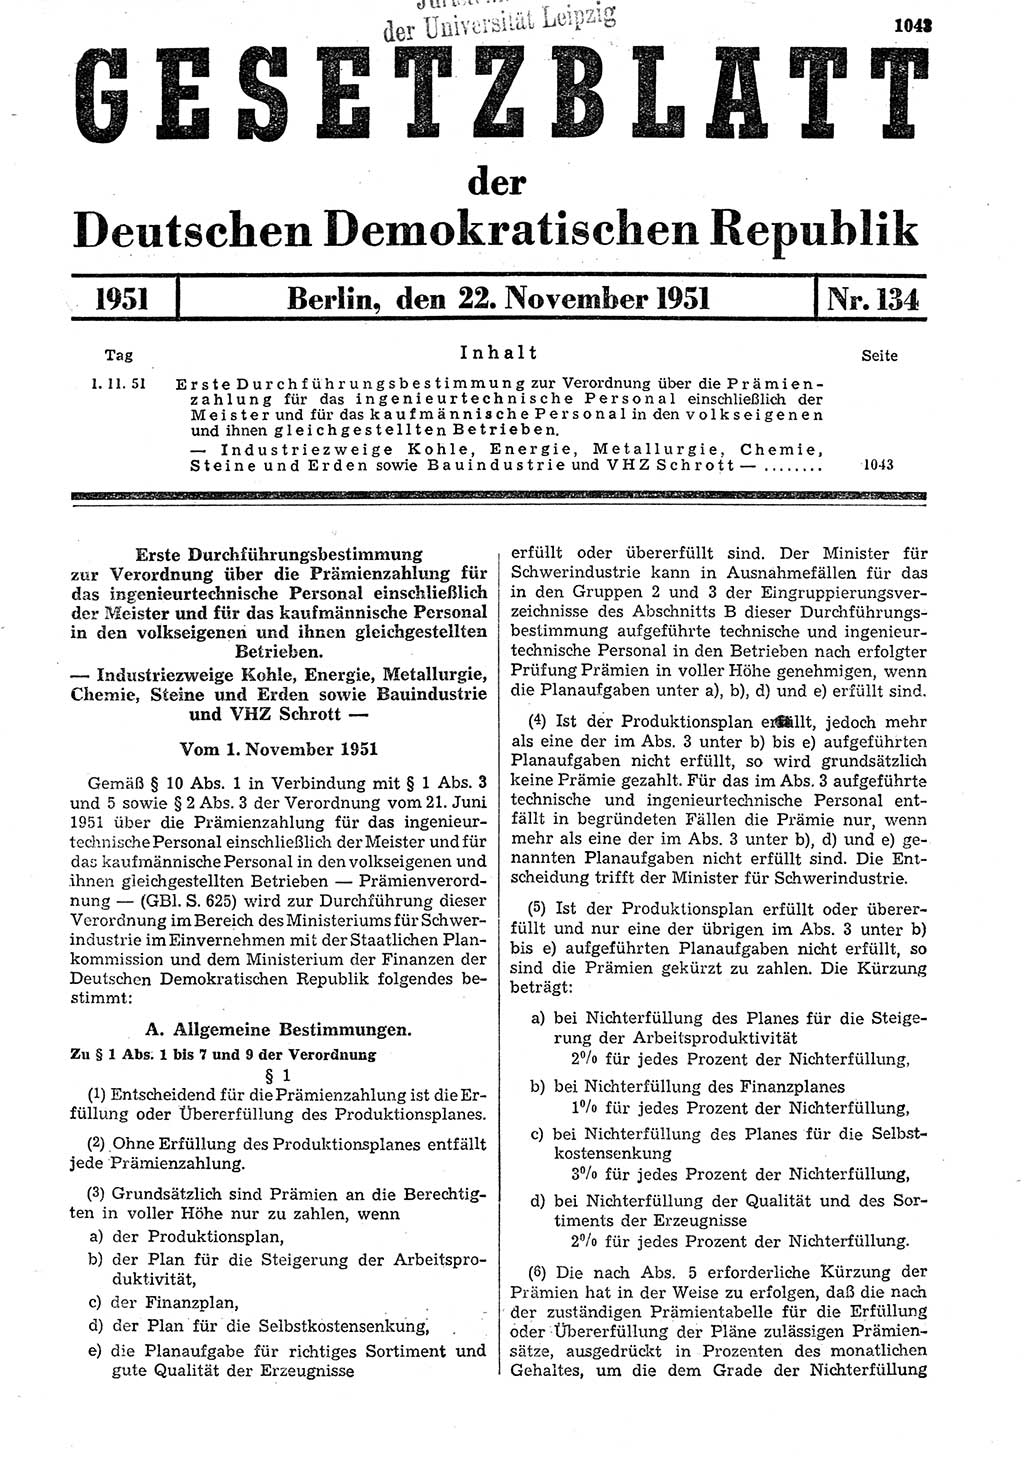 Gesetzblatt (GBl.) der Deutschen Demokratischen Republik (DDR) 1951, Seite 1043 (GBl. DDR 1951, S. 1043)